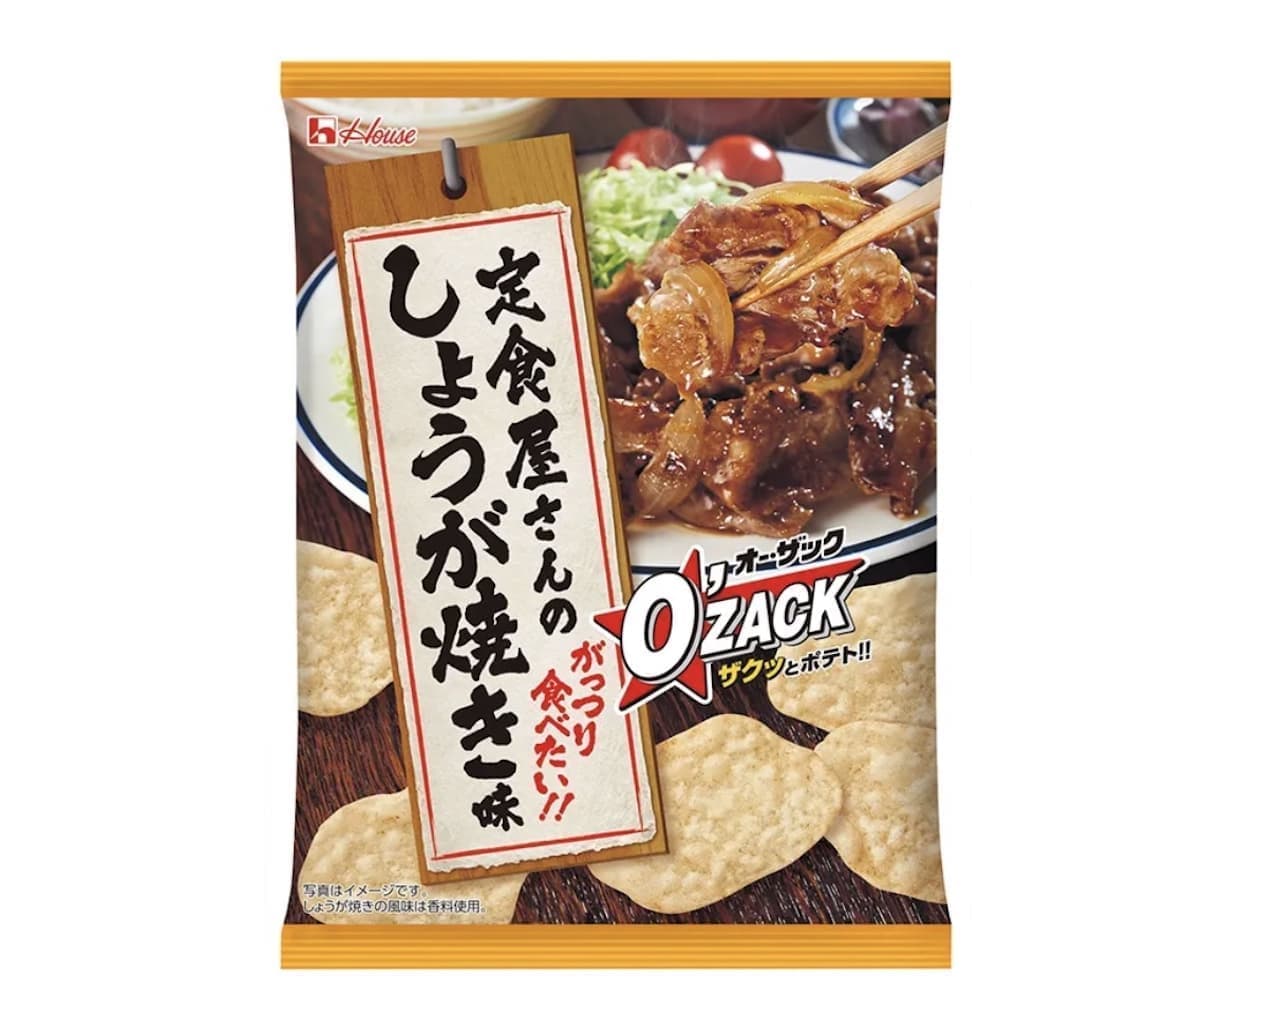 Au Zac" (teishoku-ya-no gingerbread flavor) from House Foods.